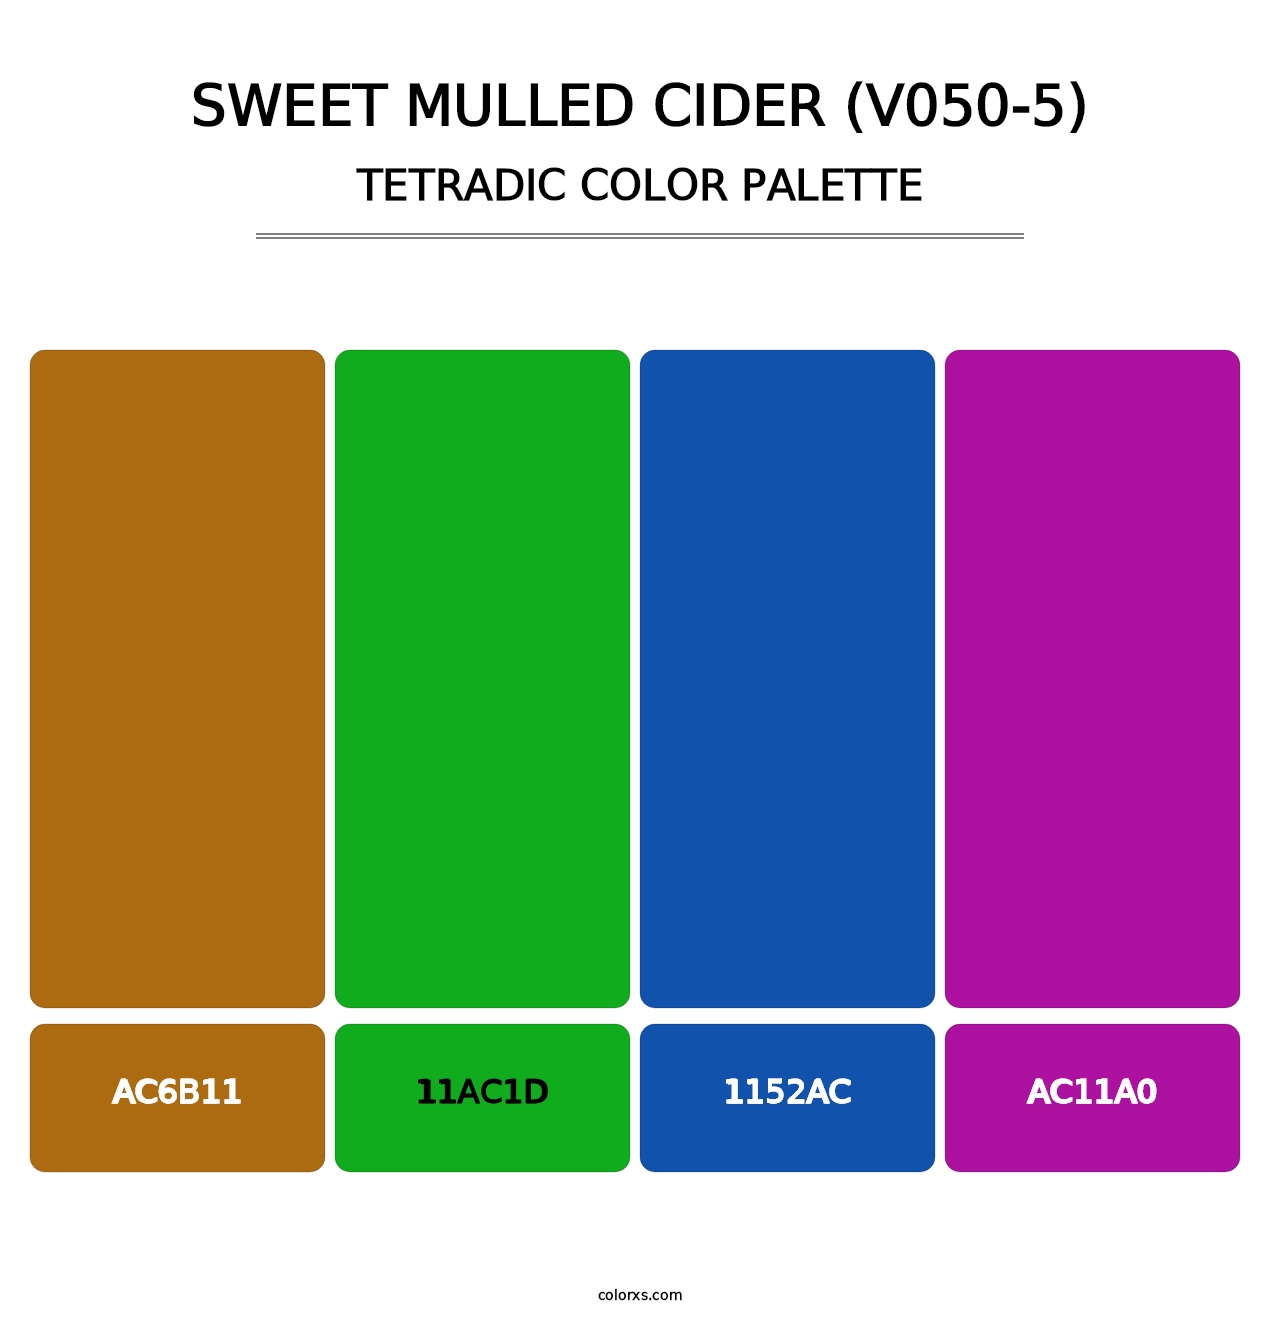 Sweet Mulled Cider (V050-5) - Tetradic Color Palette